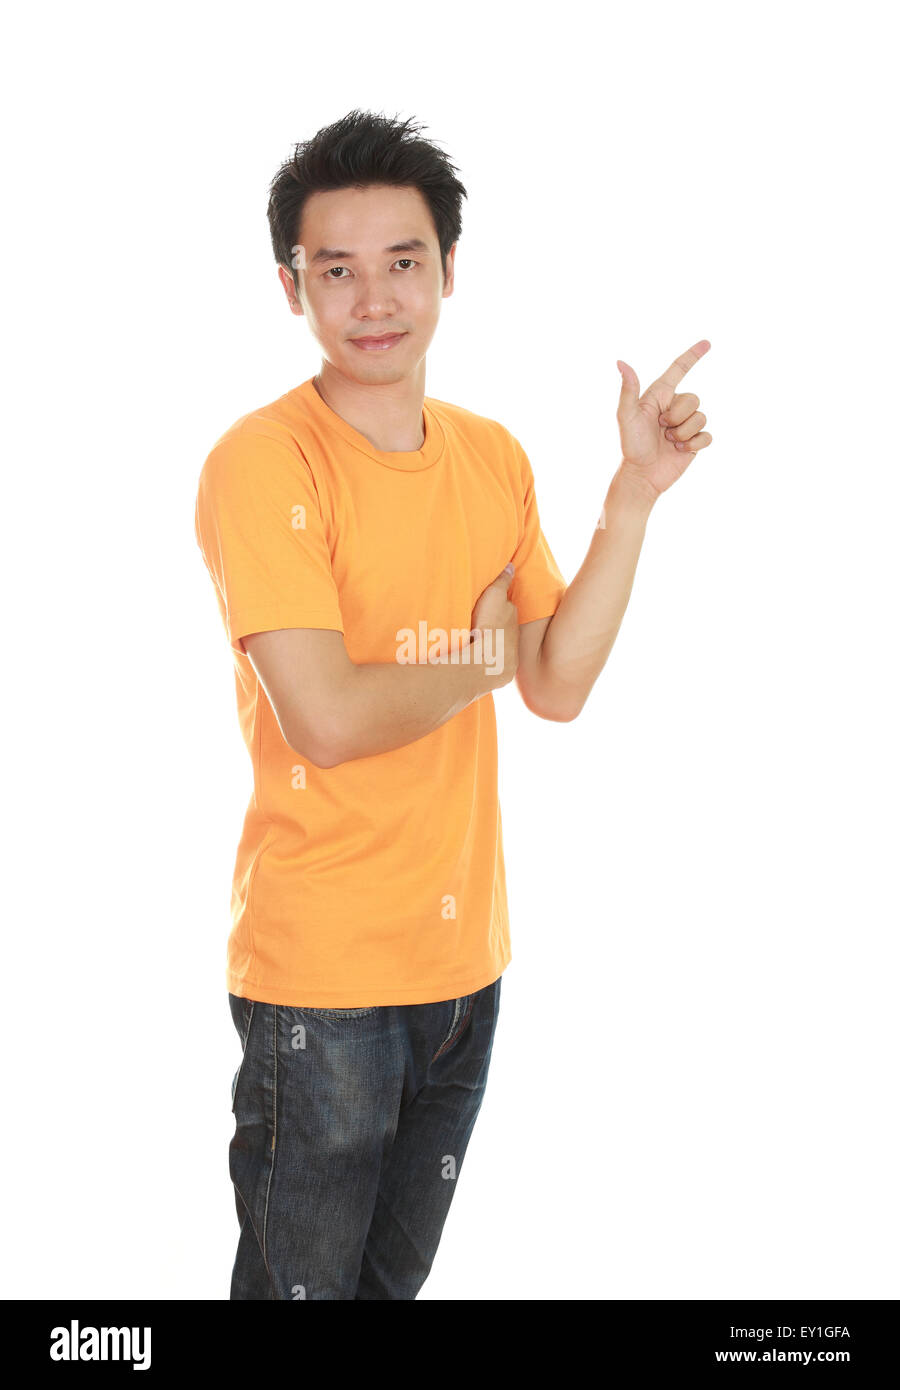 Man denke an Idee mit orange T-shirt isoliert auf weißem Hintergrund Stockfoto